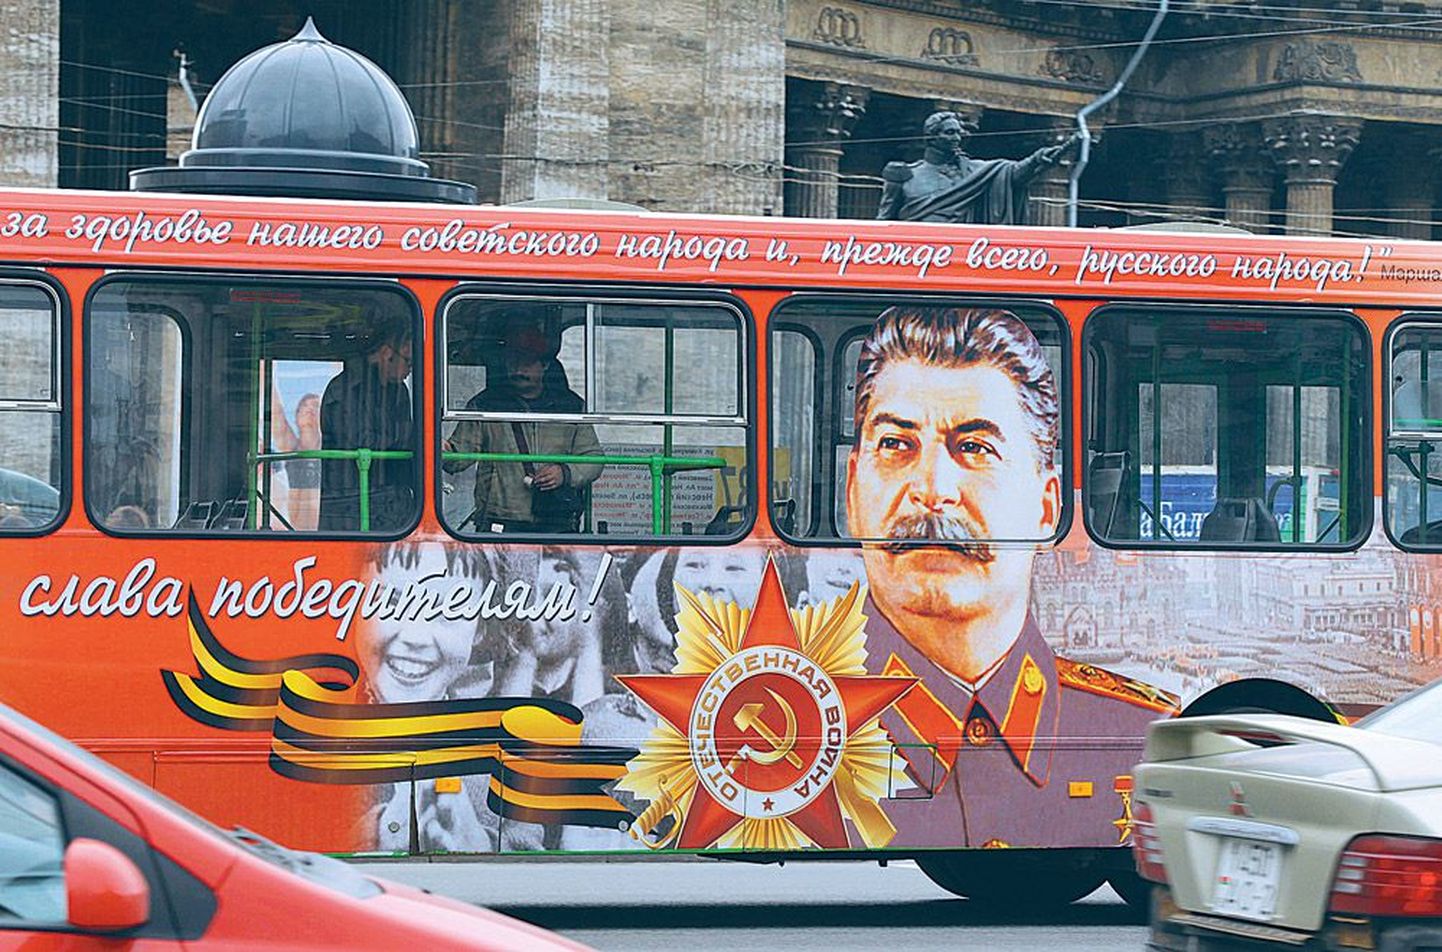 Peterburi kesklinnas sõidab liinibuss, mida ehib Jossif Stalini näopilt. Eile sodisid tundmatud portree üle.